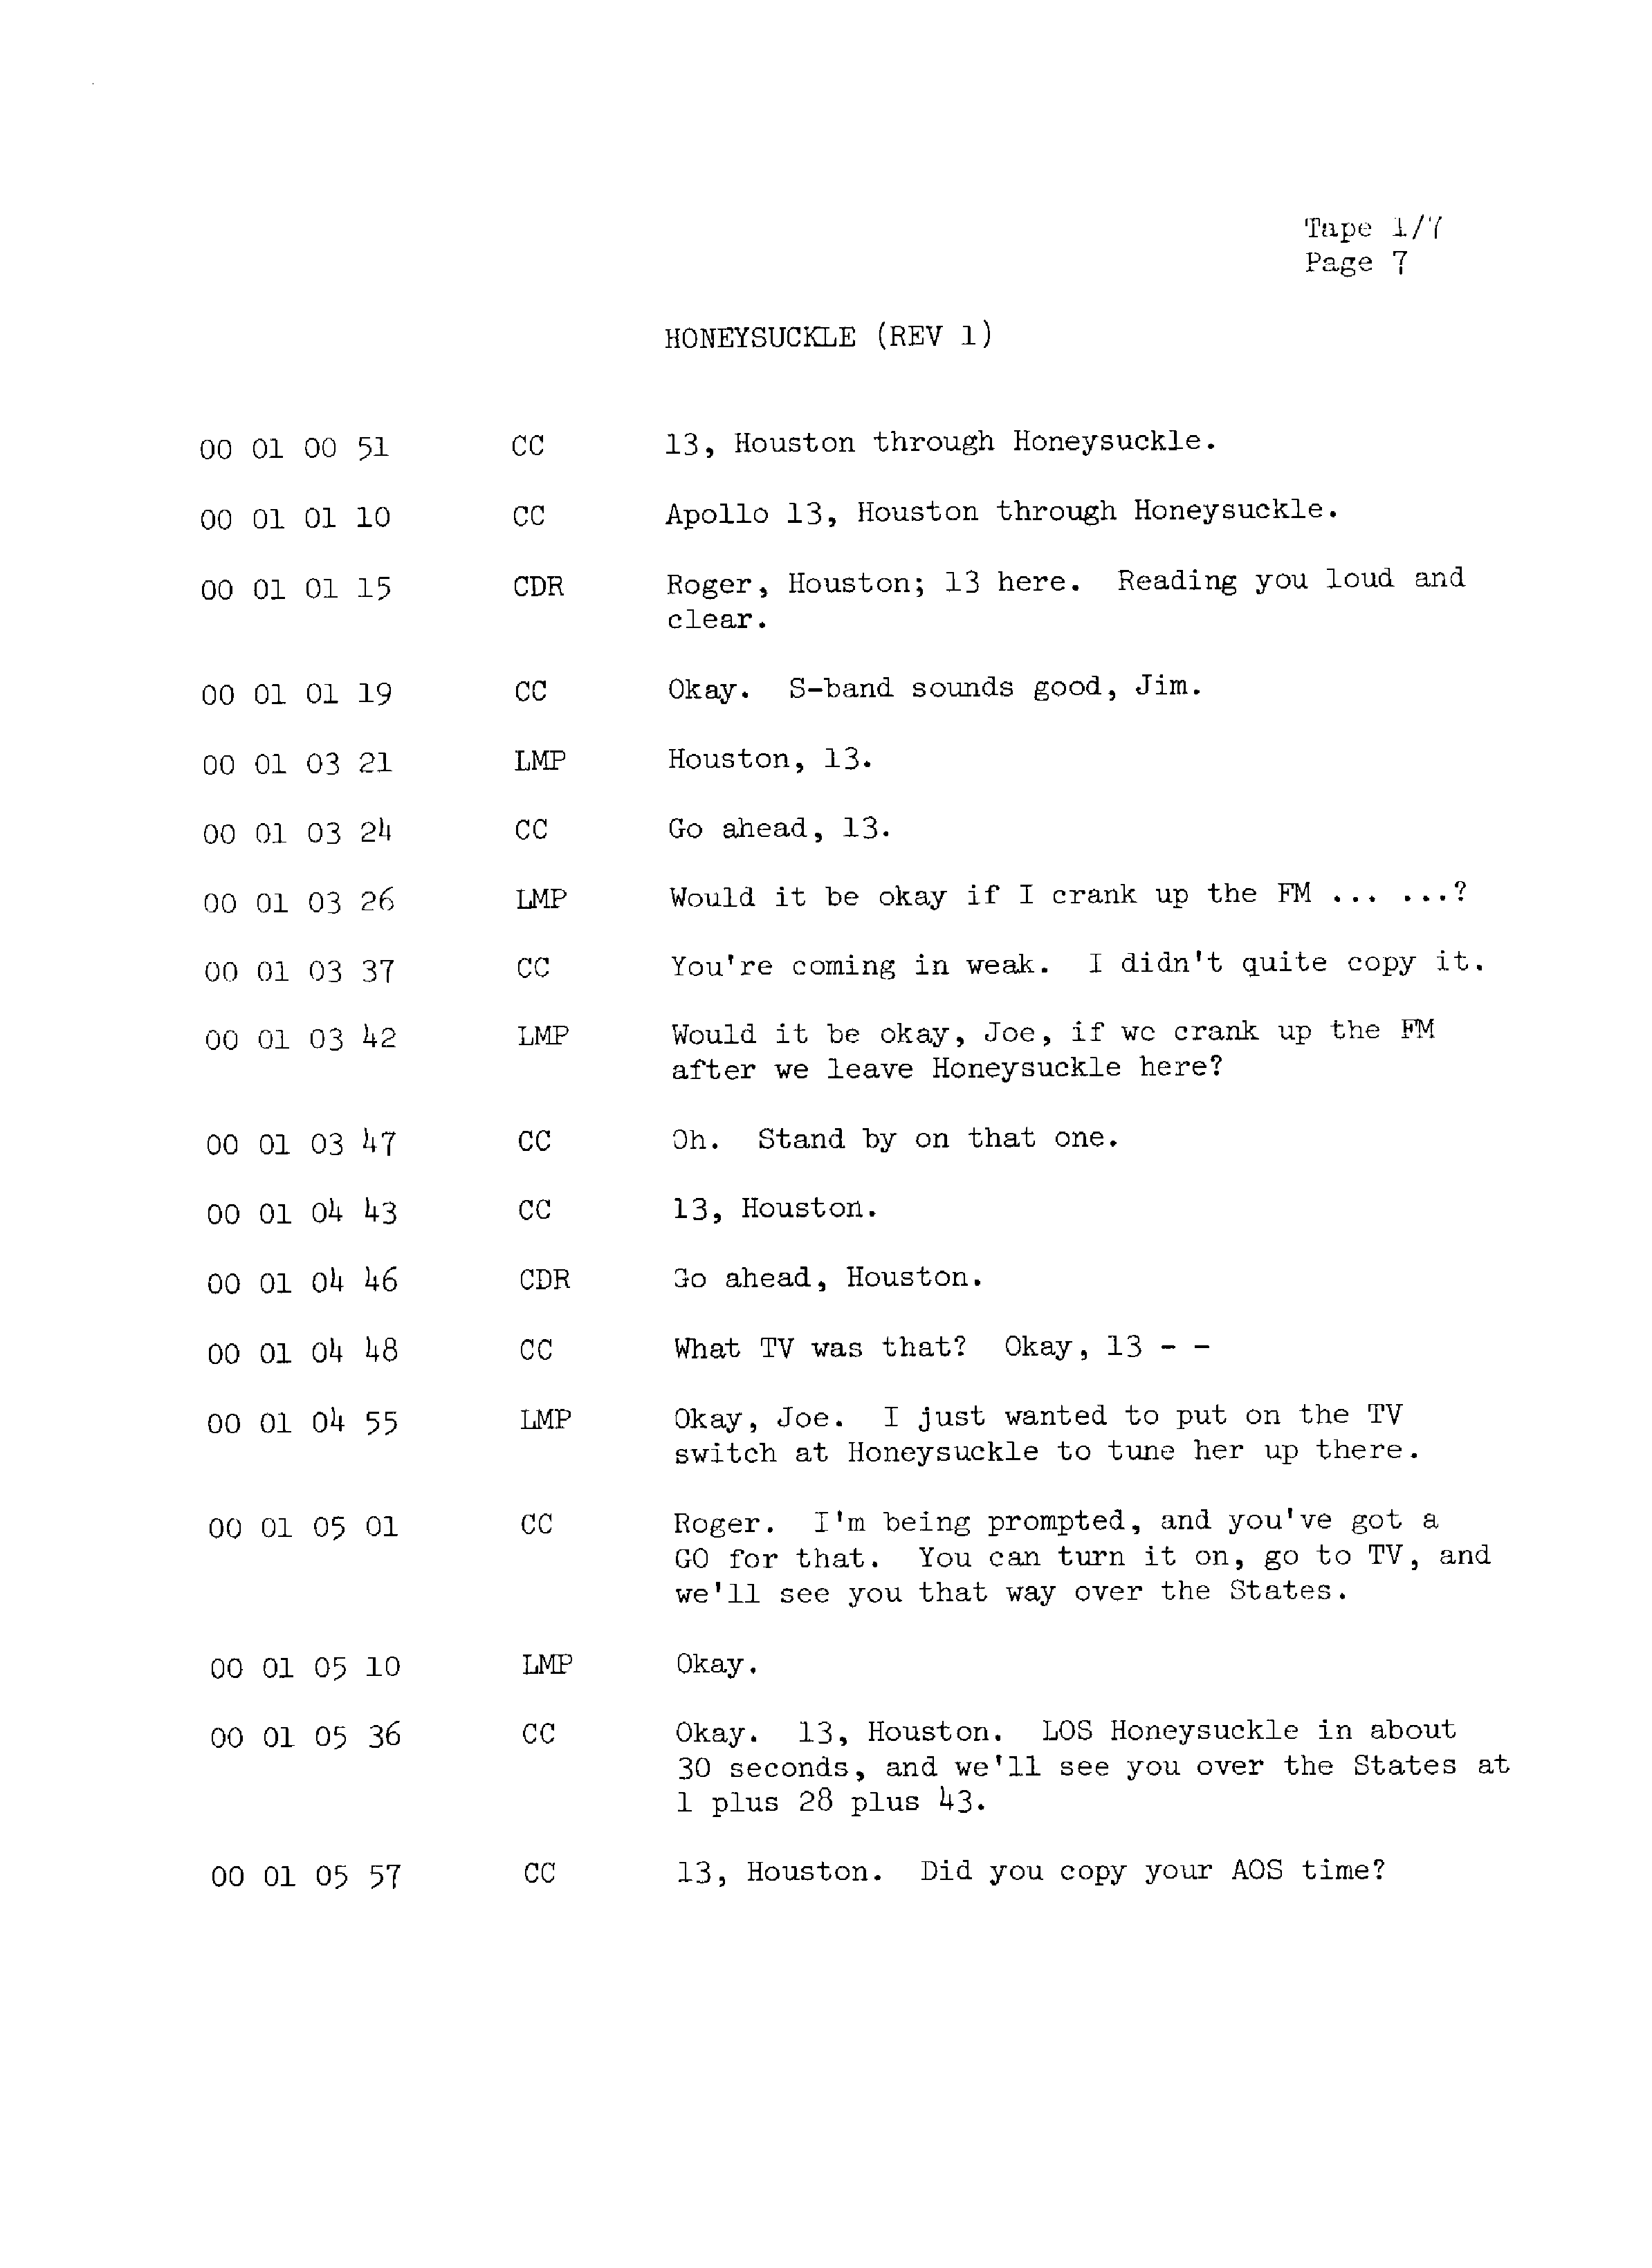 Page 14 of Apollo 13’s original transcript